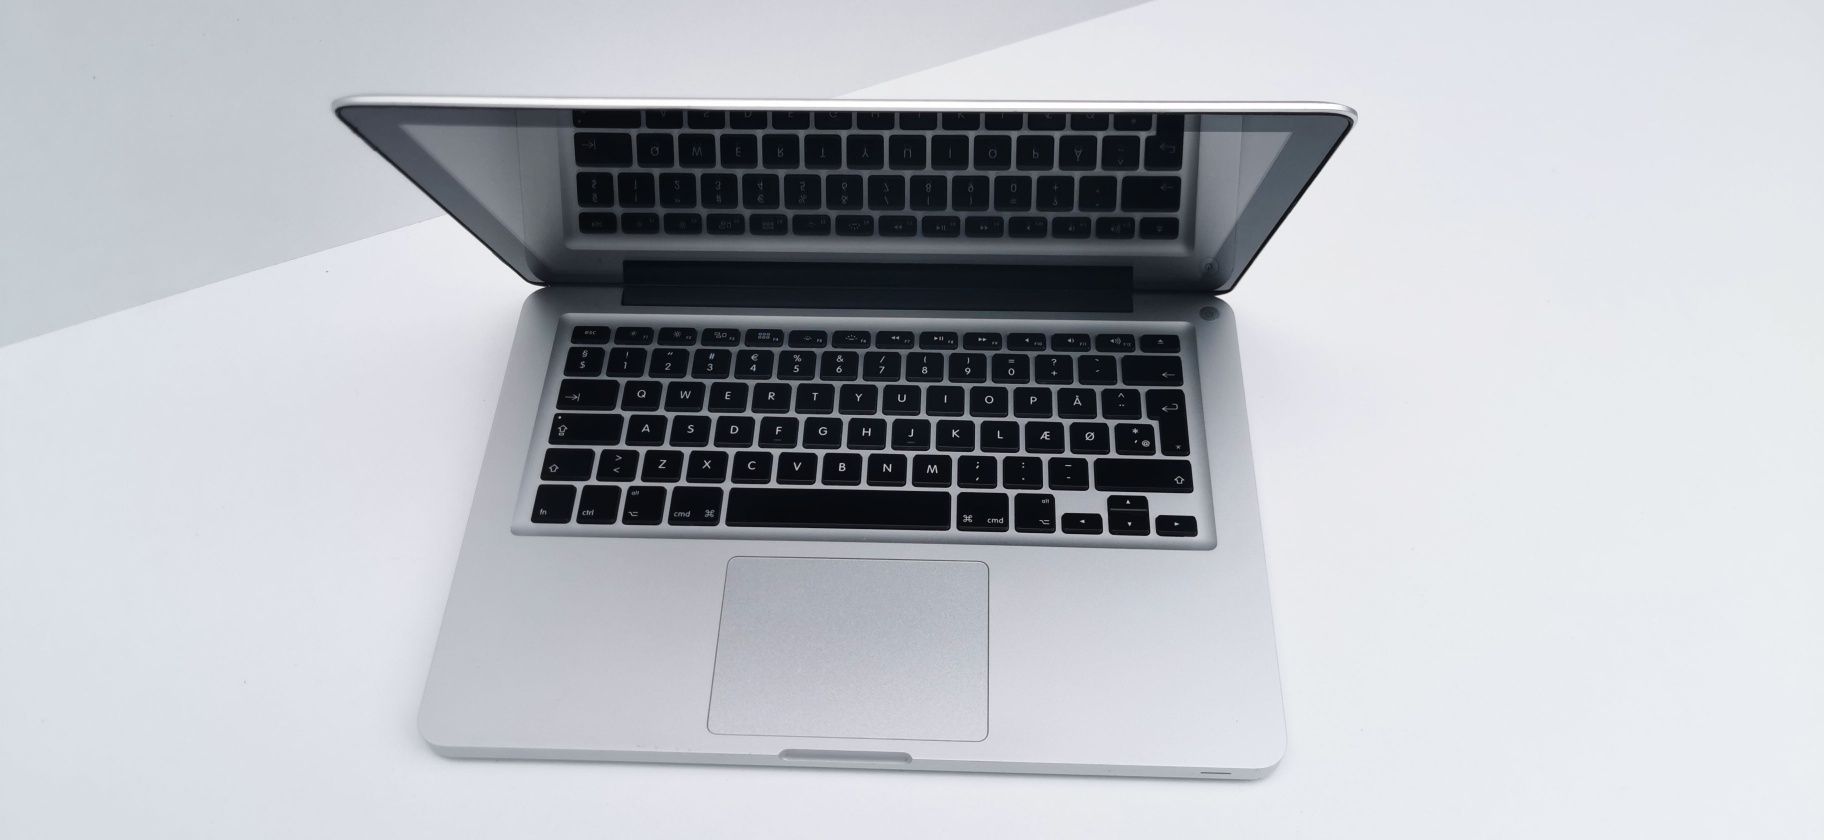 Apple MacBook Pro A1278 Impecabil cu Procesor 256 GB SSD si 8 GB RAM